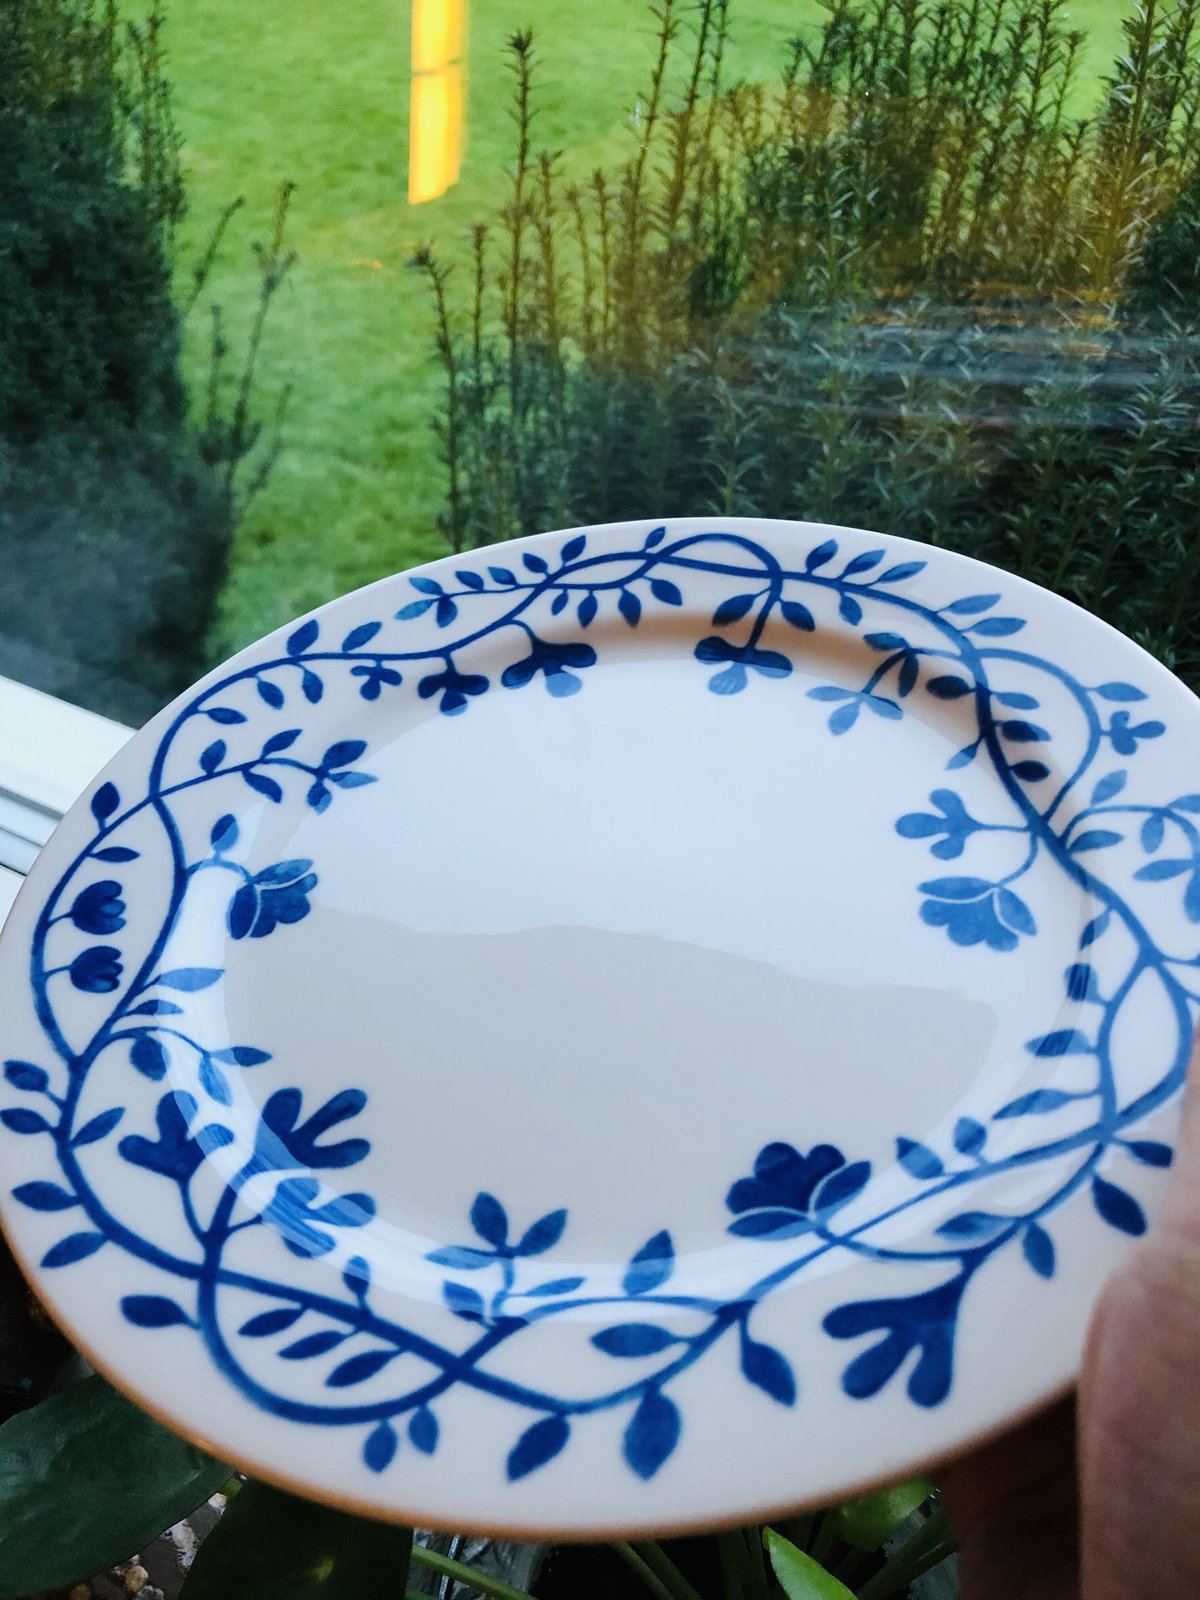 ペルゴラ ロールストランド プレート ディナー 大皿 パスタ メイン - 食器